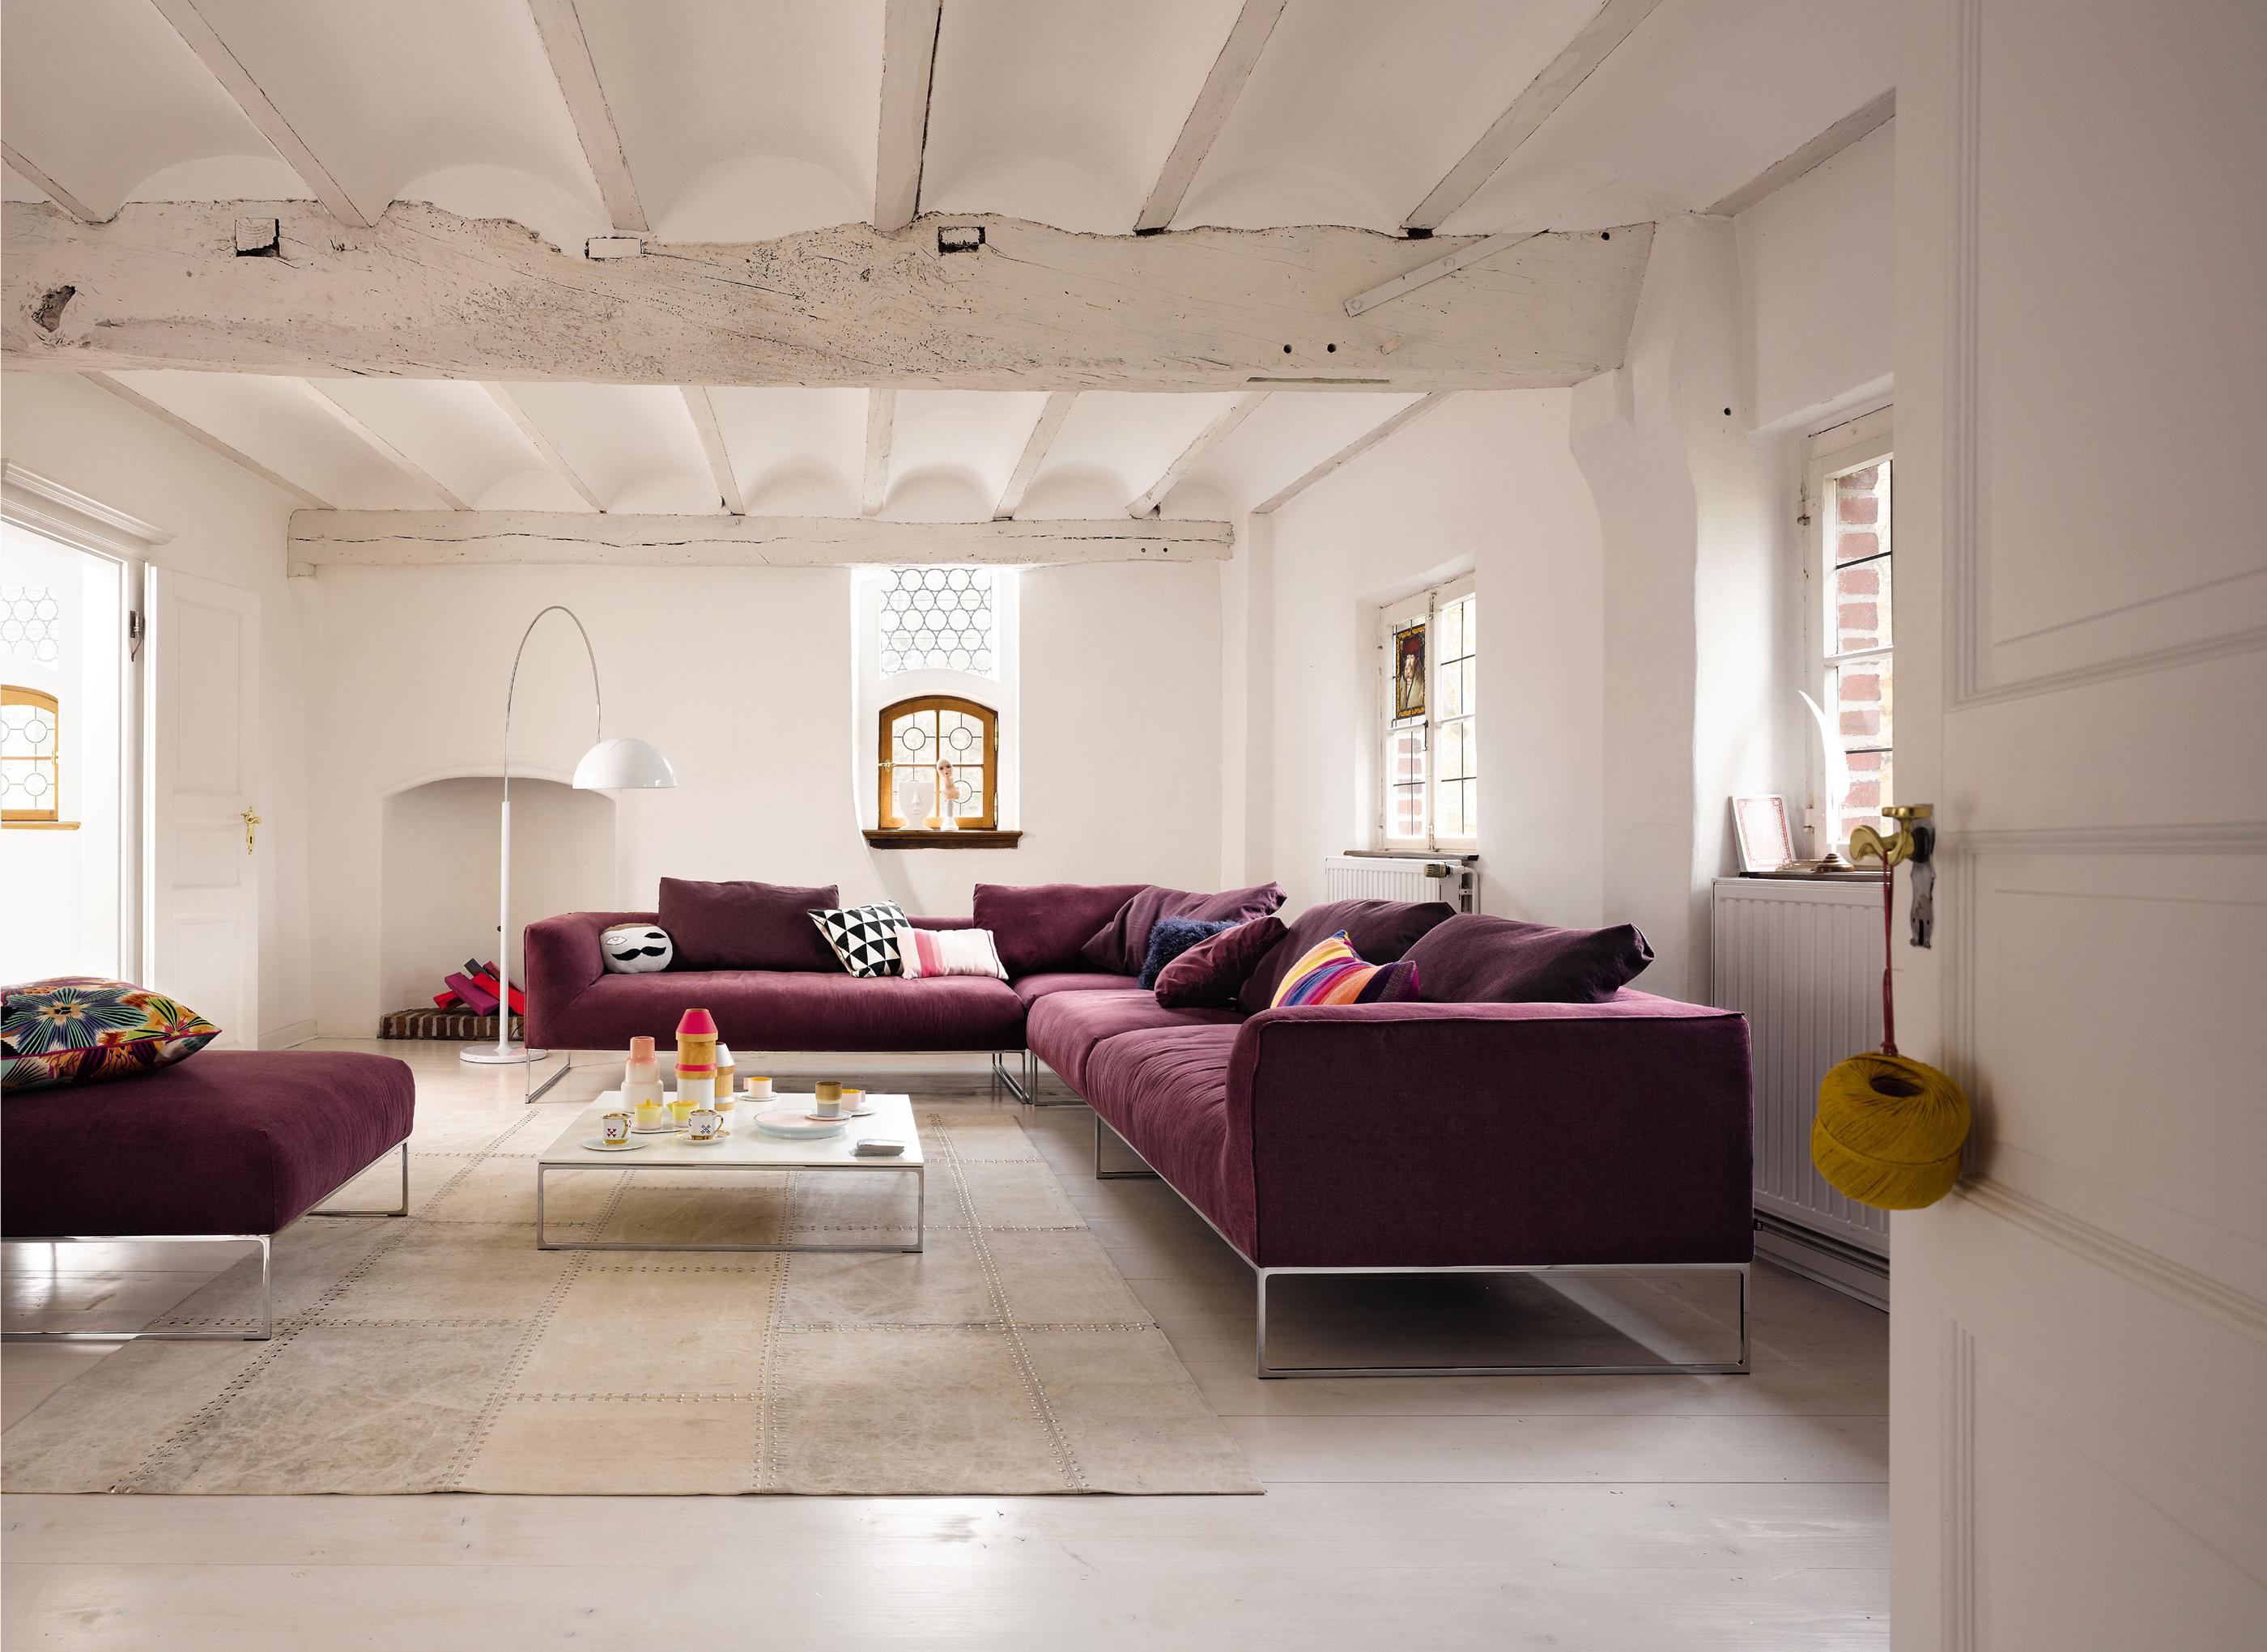 Weinrotes Ecksofa in weißer Umgebung #sofa #weißercouchtisch #weißeholzbalkendecke #designersofa ©COR Sitzmöbel